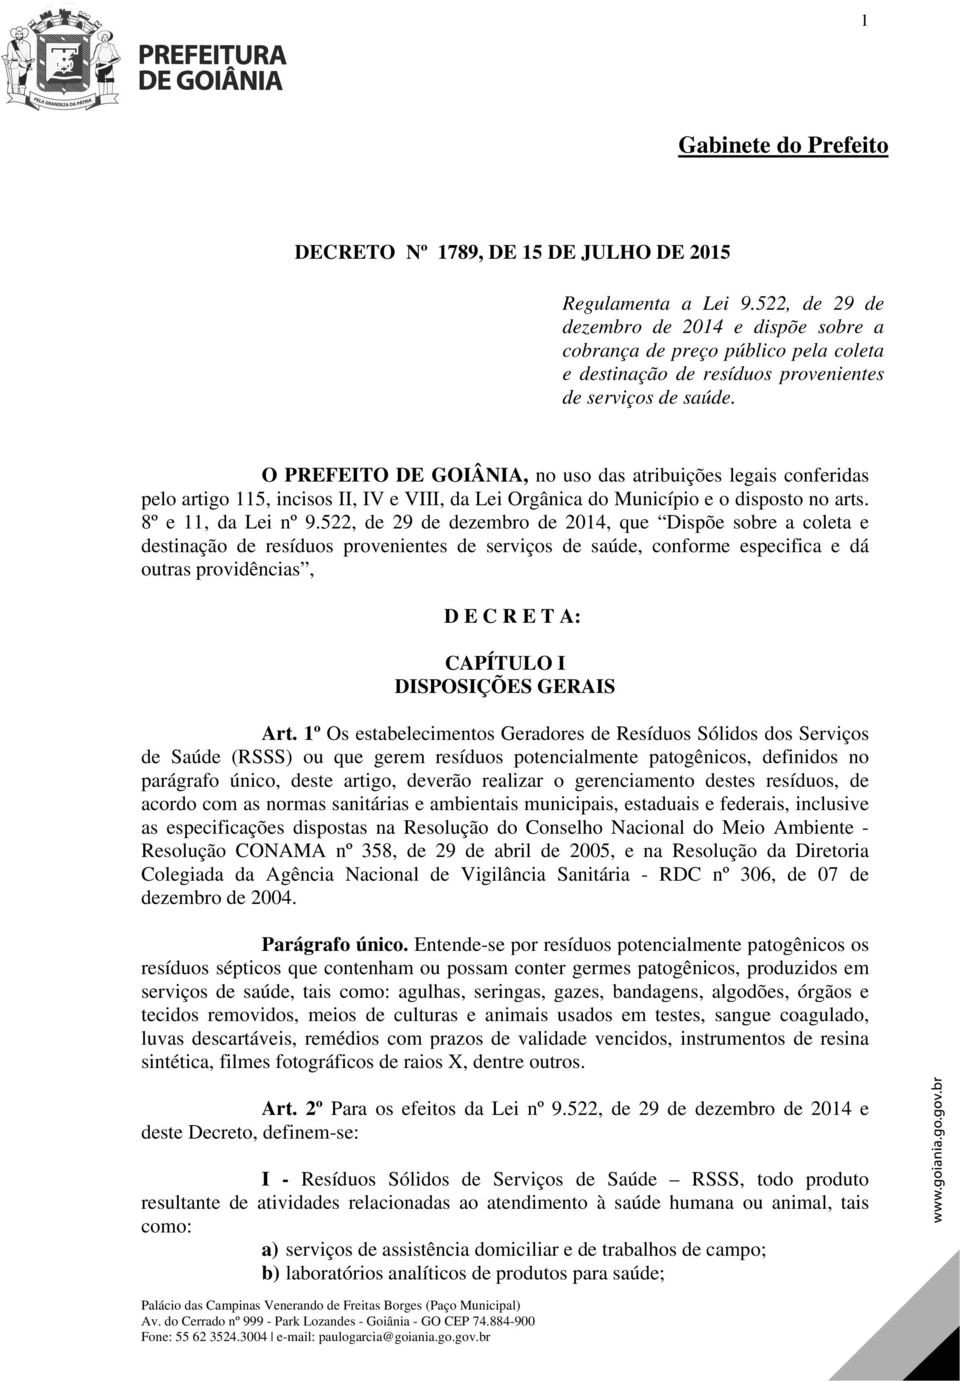 O PREFEITO DE GOIÂNIA, no uso das atribuições legais conferidas pelo artigo 115, incisos II, IV e VIII, da Lei Orgânica do Município e o disposto no arts. 8º e 11, da Lei nº 9.